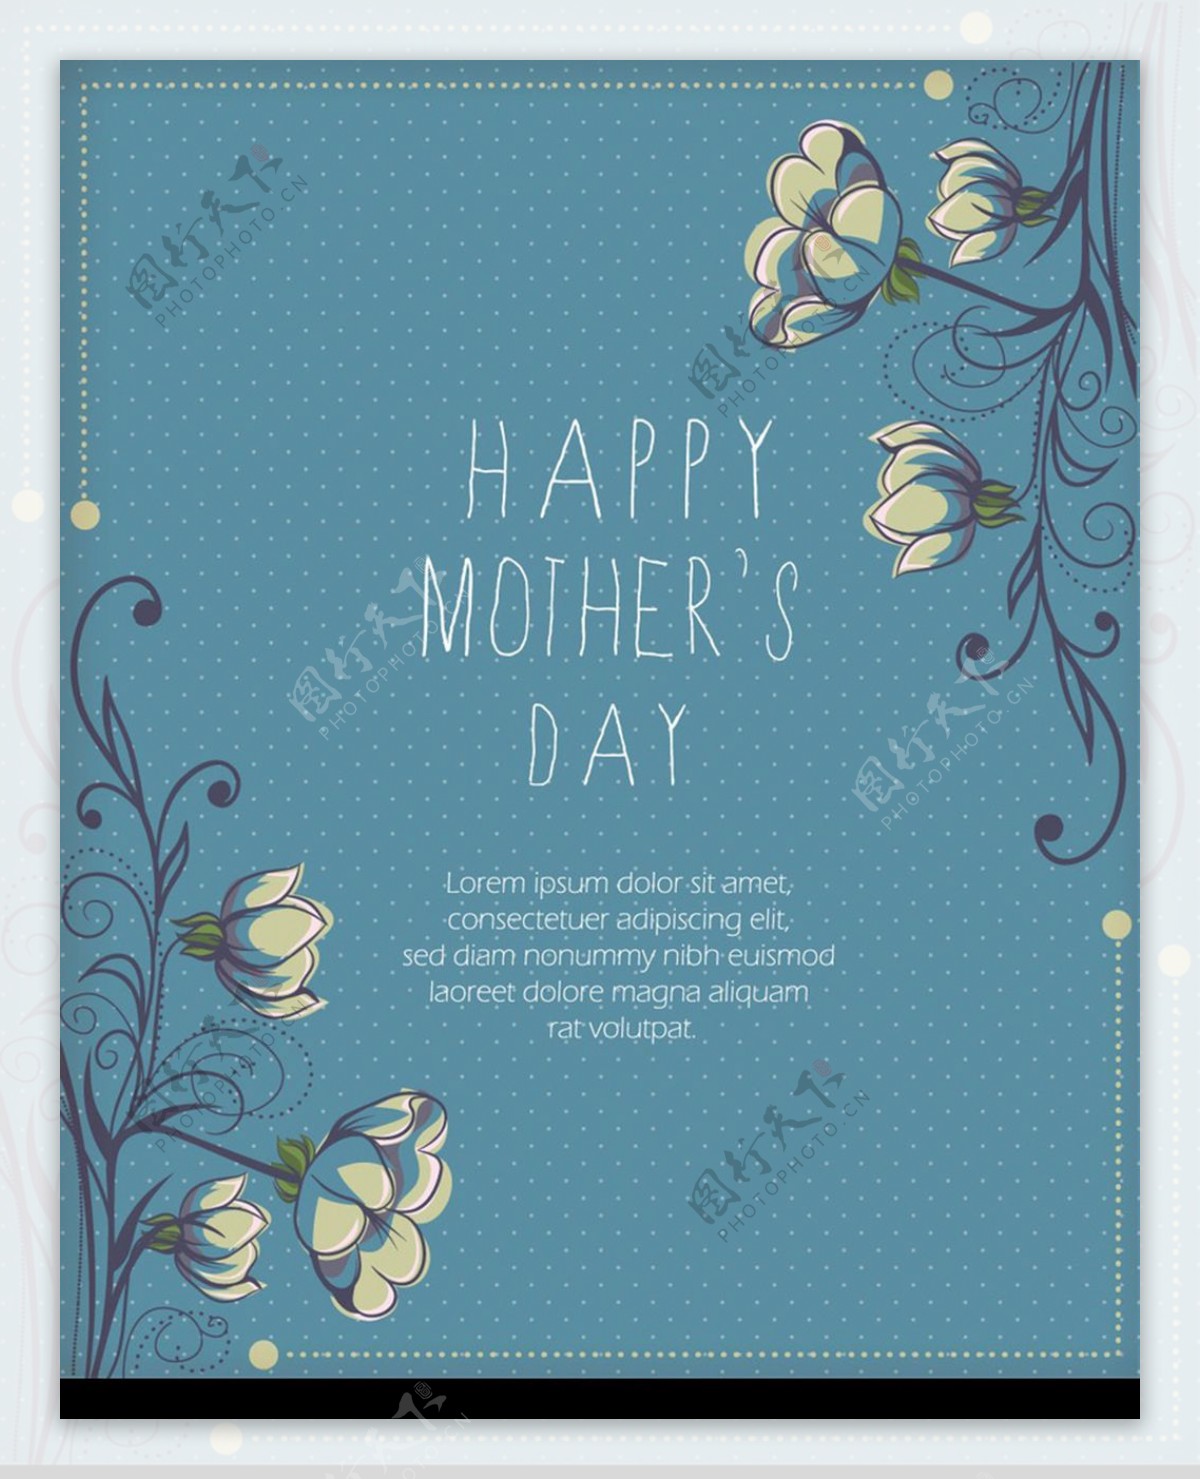 粉蓝色花纹边框背景母亲节卡片